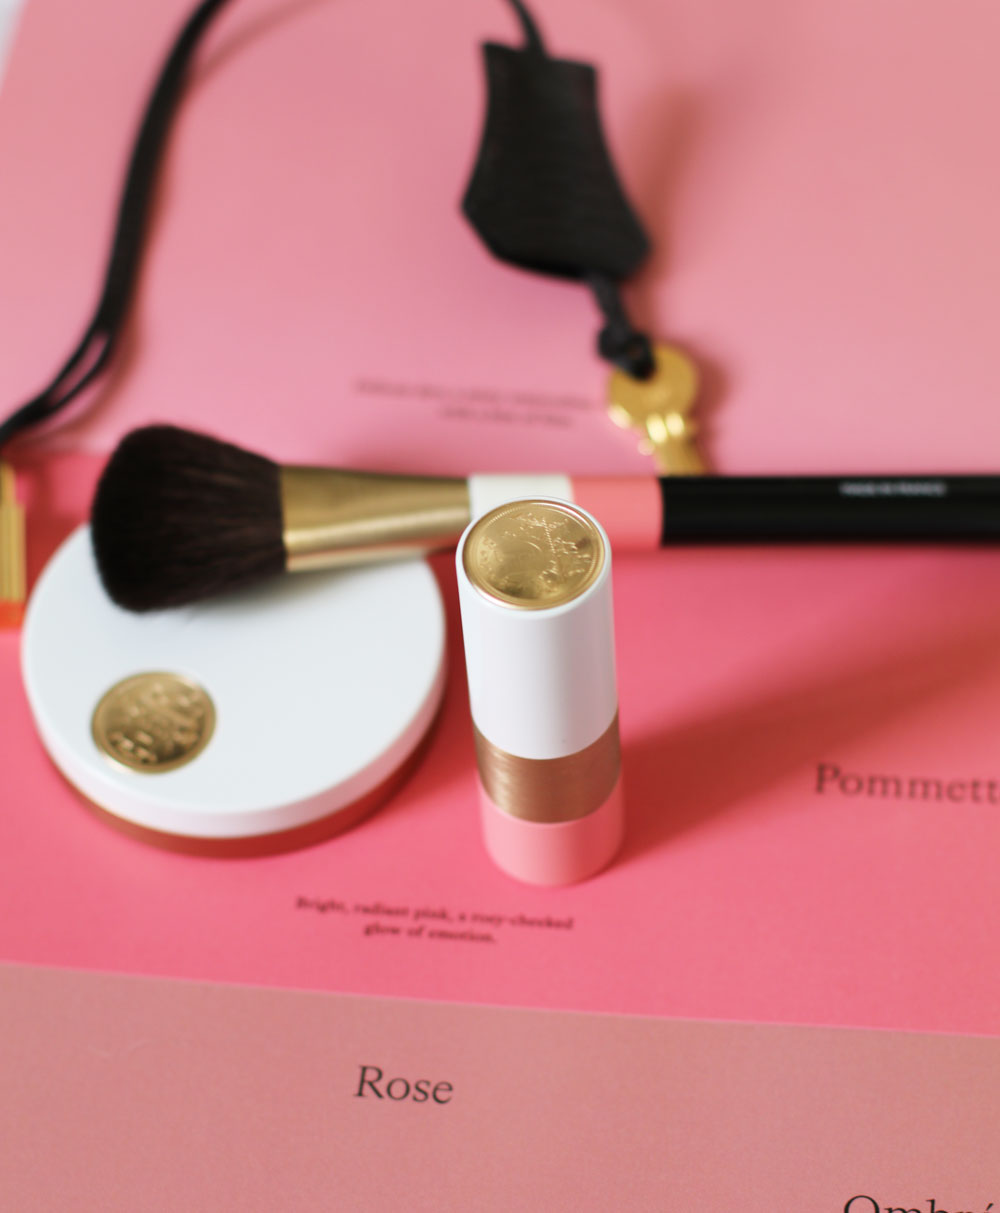 Pretty in pink: Die Makeup-Produkte der neuen Kollektion Rose Hermes sind eine wunderschöne Hommage an die Farbe Rosa.